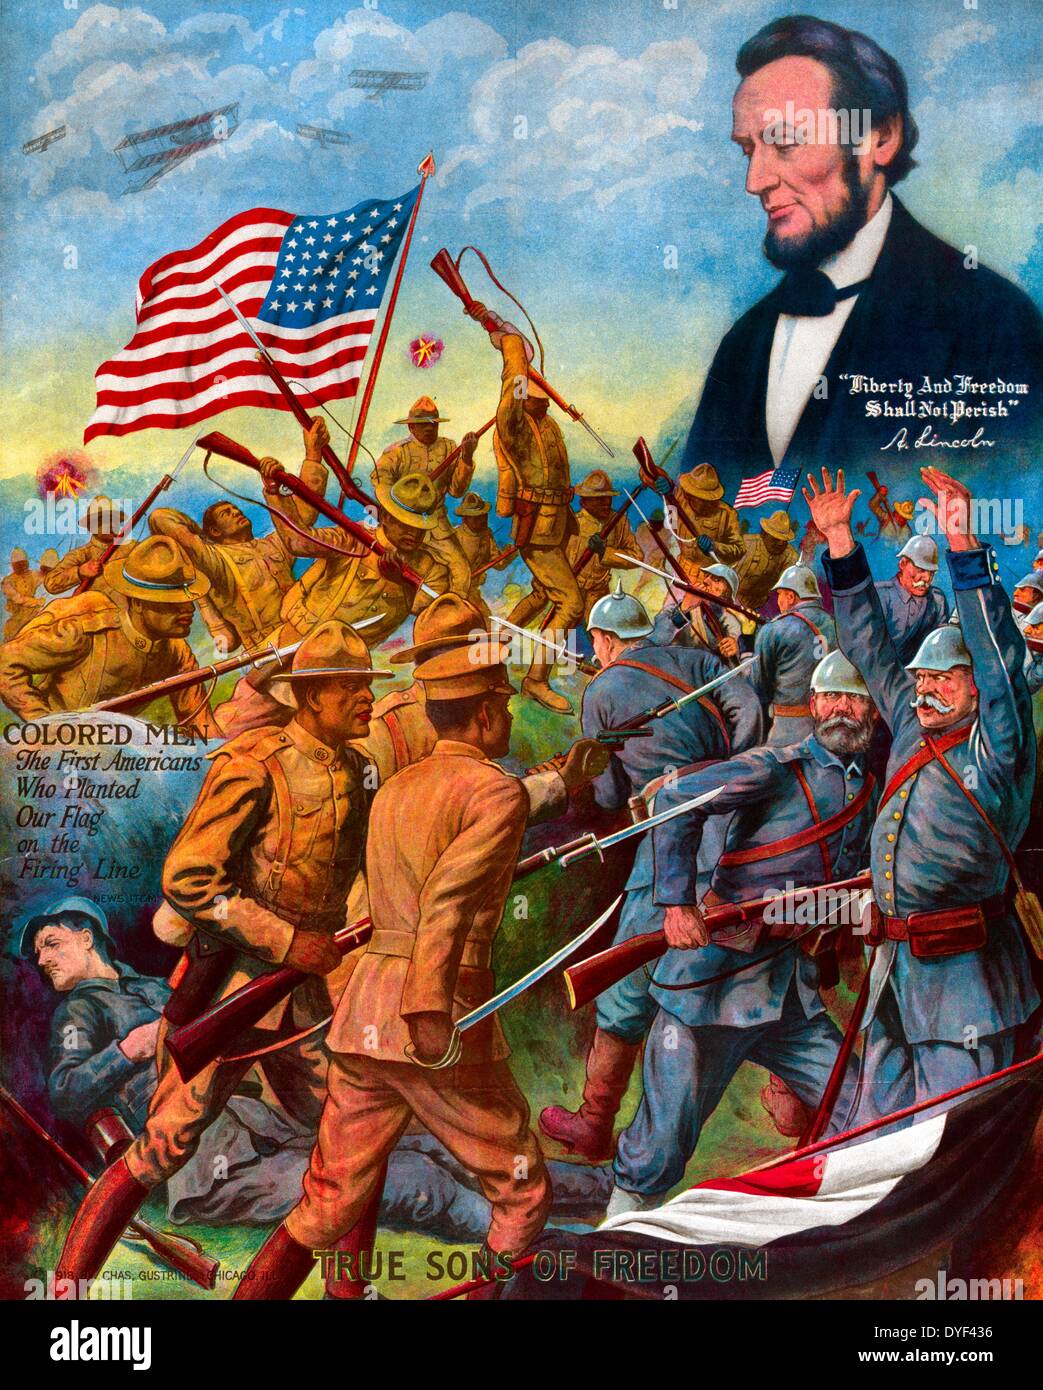 Vrai fils de la liberté 1918. African American soldats combattant les soldats allemands dans la Première Guerre mondiale Le président Abraham Lincoln peut être vu au-dessus des soldats. Gustrine Chas. Banque D'Images